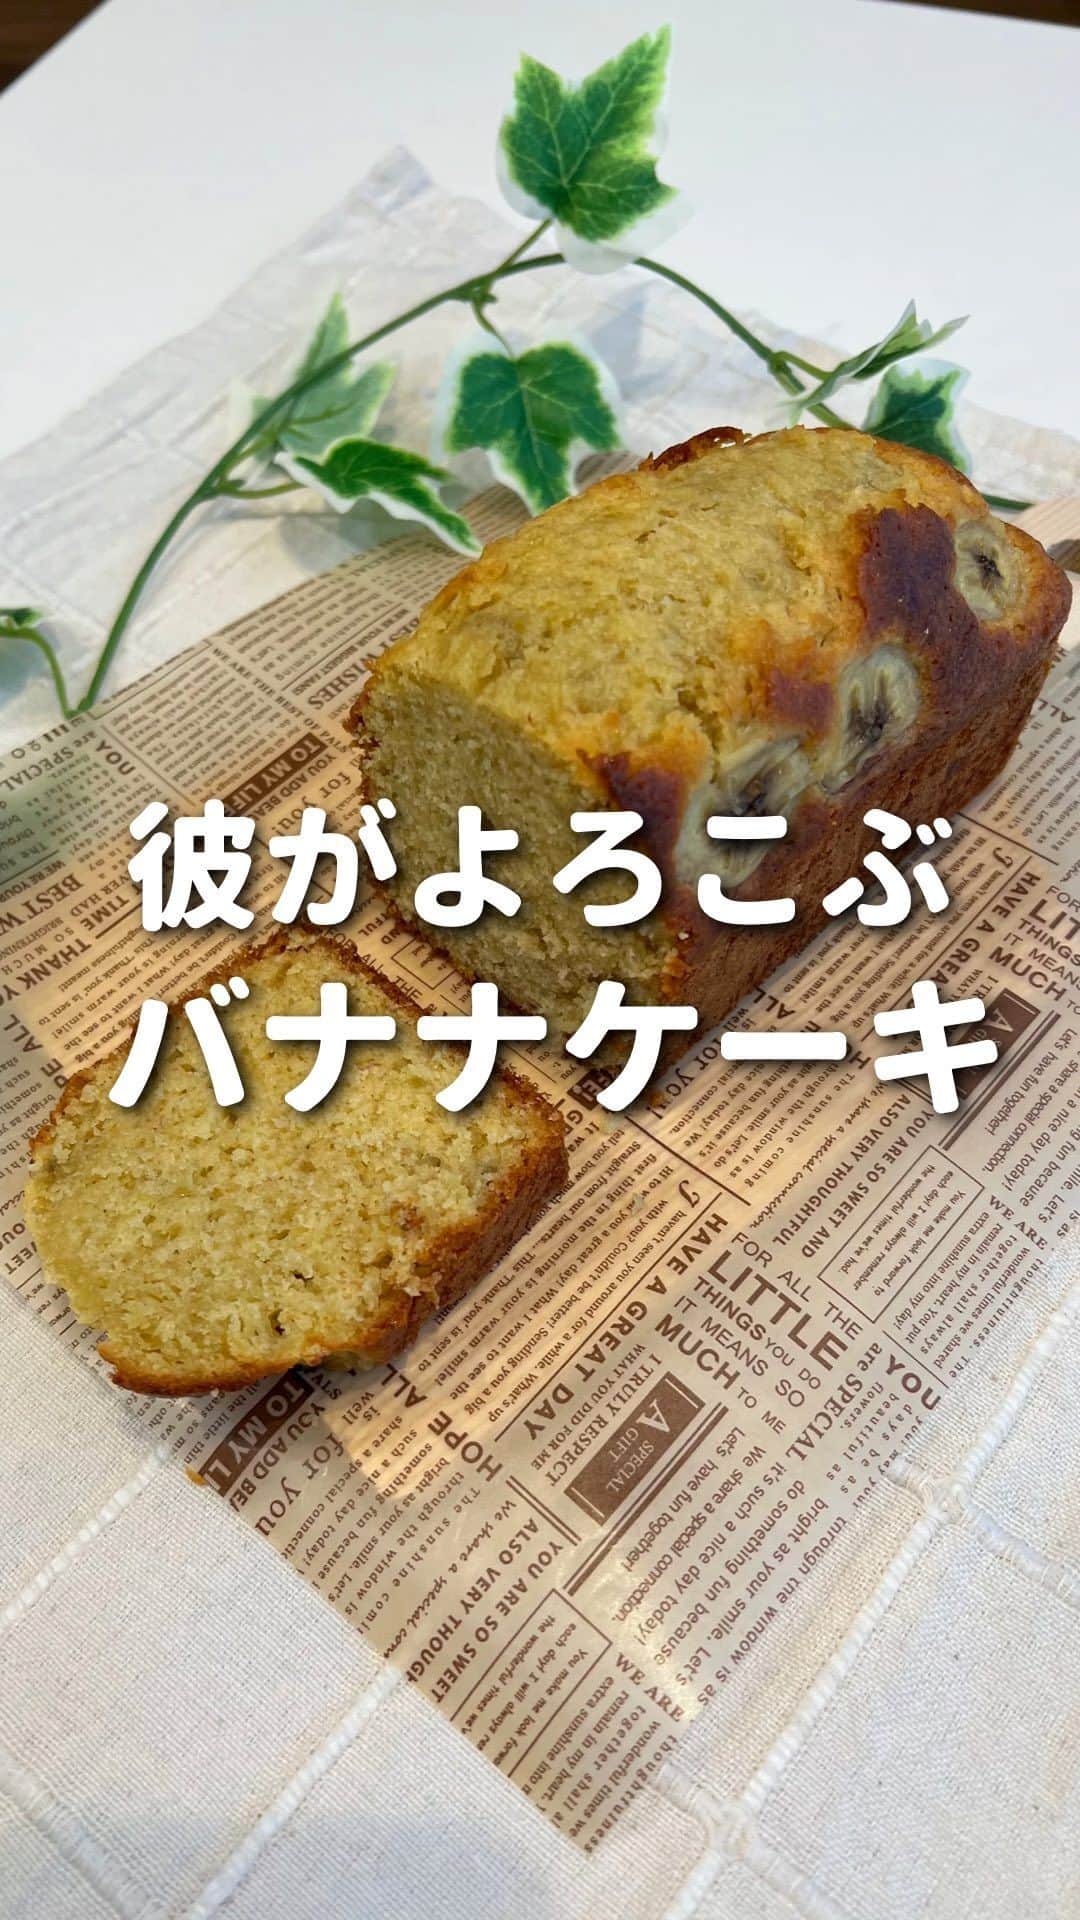 ゆきたまのインスタグラム：「おすすめはハイライトに💖 👉@yukitama_gram (←ハイライトに飛べるよ)  ⁡このバナナケーキ、簡単なのに本格的すぎて 昔からずーと作ってるレシピです🍌💛   冷蔵庫で冷やすとしっとりして美味しすぎる😍 オリーブオイルを使ってるので さっぱりくどくないのです✨ もちろんバターを使っても作れるよ✌️ ⁡是非作ってみてねん〜  ✼••┈┈┈┈••✼••┈┈┈┈••✼ ⁡ 🍌レシピ🍌 【材料（パウンド型1台＋1カップ分）】 ⚪︎バナナ…1.5本 ⚪︎オリーブオイル…80ml ⚪︎砂糖…80g ⚪︎卵 …2個 ⚪︎ホットケーキミックス…150g ⁡ 作り方🧑‍🍳 ①バナナ1本はボウルに入れてフォークで潰す ⁡もう半分は1㎝の厚さに輪切りにする ②別のボウルにオリーブオイル、砂糖を入れて 白っぽくなるまで混ぜる→卵を割り入れまぜる →潰したバナナを加えてよく混ぜる。 ③パウンド型に生地を流し入れ、 5㎝の高さから2度落として空気を抜く →輪切りにしたバナナを上に並べて乗せる ④180℃に予熱したオーブンで35分焼く ⑤焼き上がったら、乾燥しないように ラップをかぶせ冷ます→冷蔵庫で冷やして完成 ⁡ ✼••┈┈┈┈••✼••┈┈┈┈••✼ ⁡ ☑︎同棲 ☑︎生活術 ☑︎彼が喜ぶ献立 ☑︎私たちの日常etc… カップルお役立ち情報を発信中です ⁡⁡ コメント、いいね、フォロー励みになります🧸 ゆきたま▷@yukitama_gram ⁡ ✼••┈┈┈┈••✼••┈┈┈┈••✼ ⁡ #同棲#同棲生活#同棲カップル#仲良しの秘訣#仲良しカップル#カップルアカウント#カップルインスタ #二人暮らし#ふたり暮らし#カップルグラム #カップル￼ #バナナケーキ#レシピ動画#スイーツレシピ#簡単お菓子#簡単スイーツ#お菓子作り#お菓子レシピ#ホットケーキミックス#バナナスイーツ#手作りスイーツ #かんたんレシピ#おうちカフェ#時短レシピ#簡単レシピ」